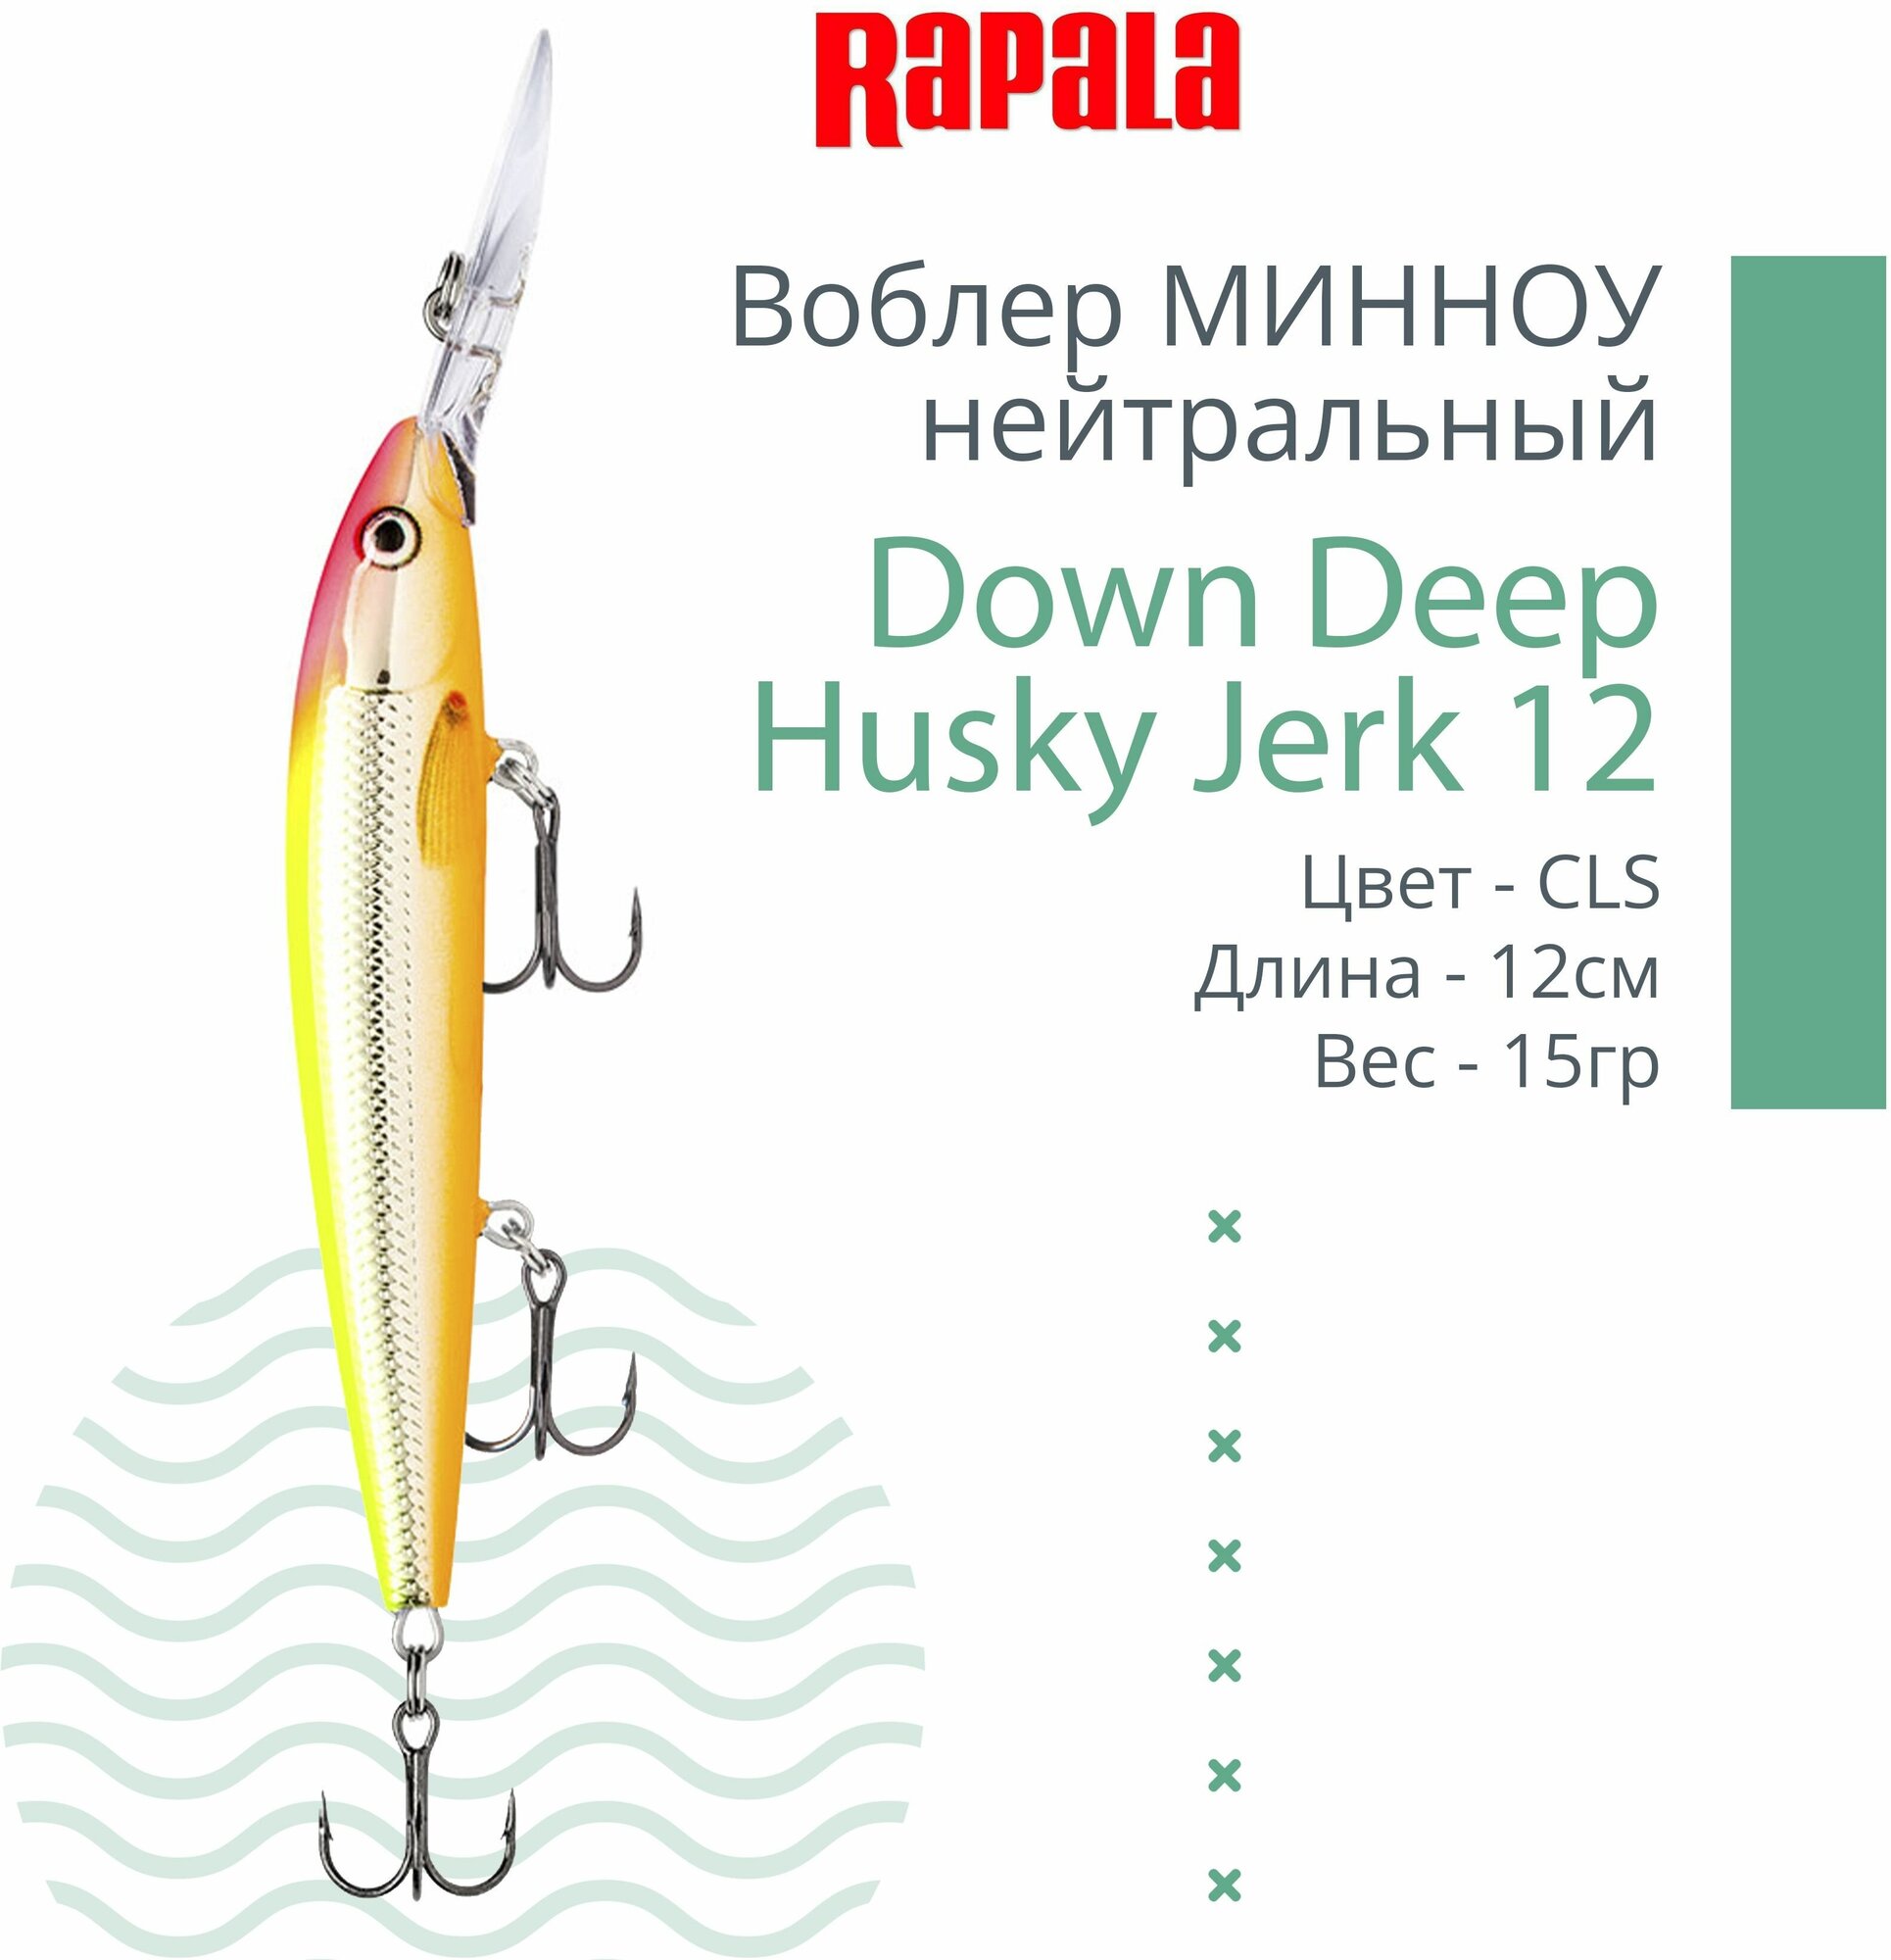 Воблер для рыбалки RAPALA Down Deep Husky Jerk 12, 12см, 15гр, цвет CLS, нейтральный